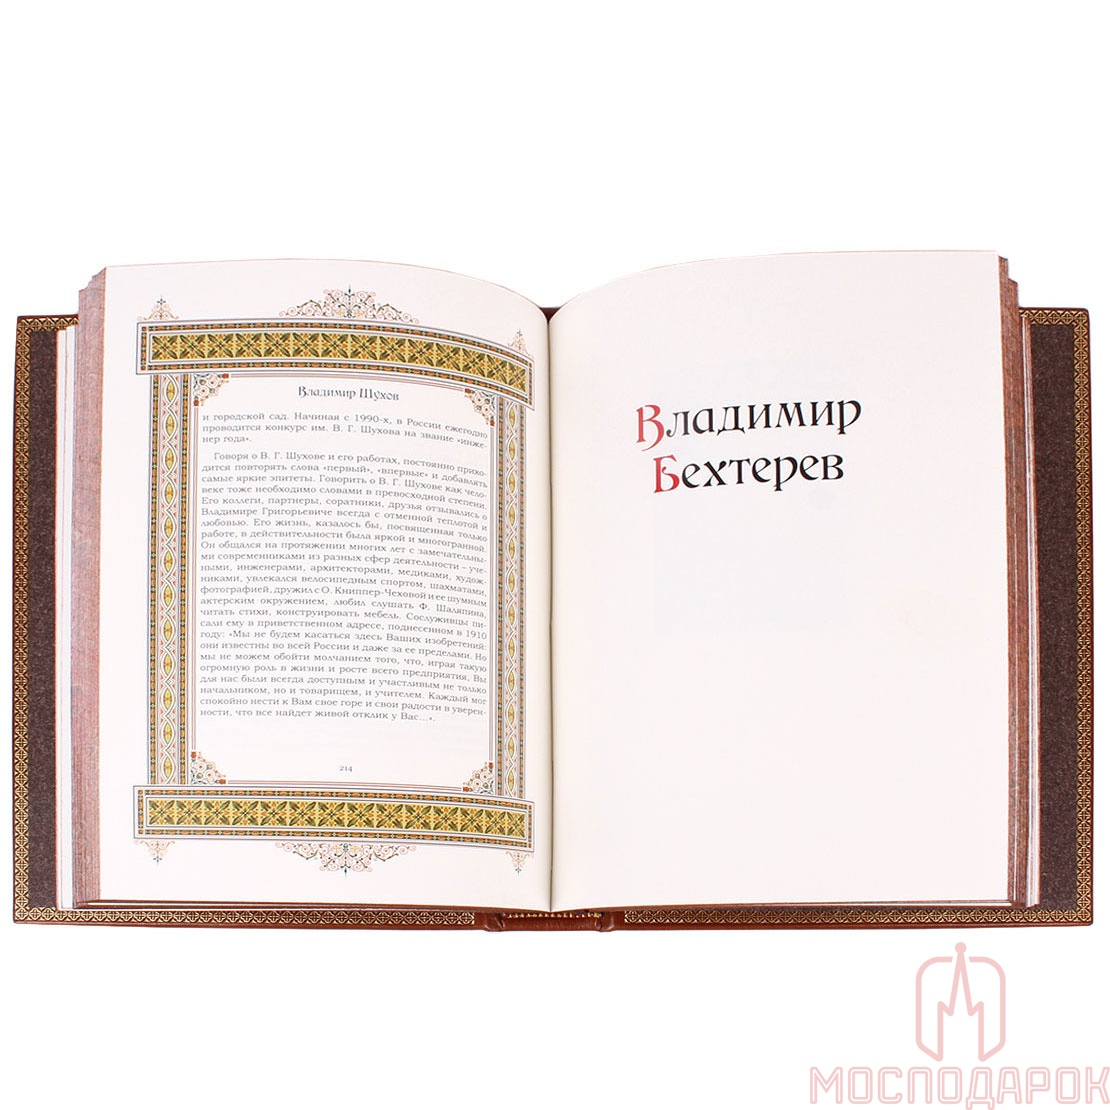 Подарочная книга "Великие имена" (Владимир) - артикул: 207946 | Мосподарок 